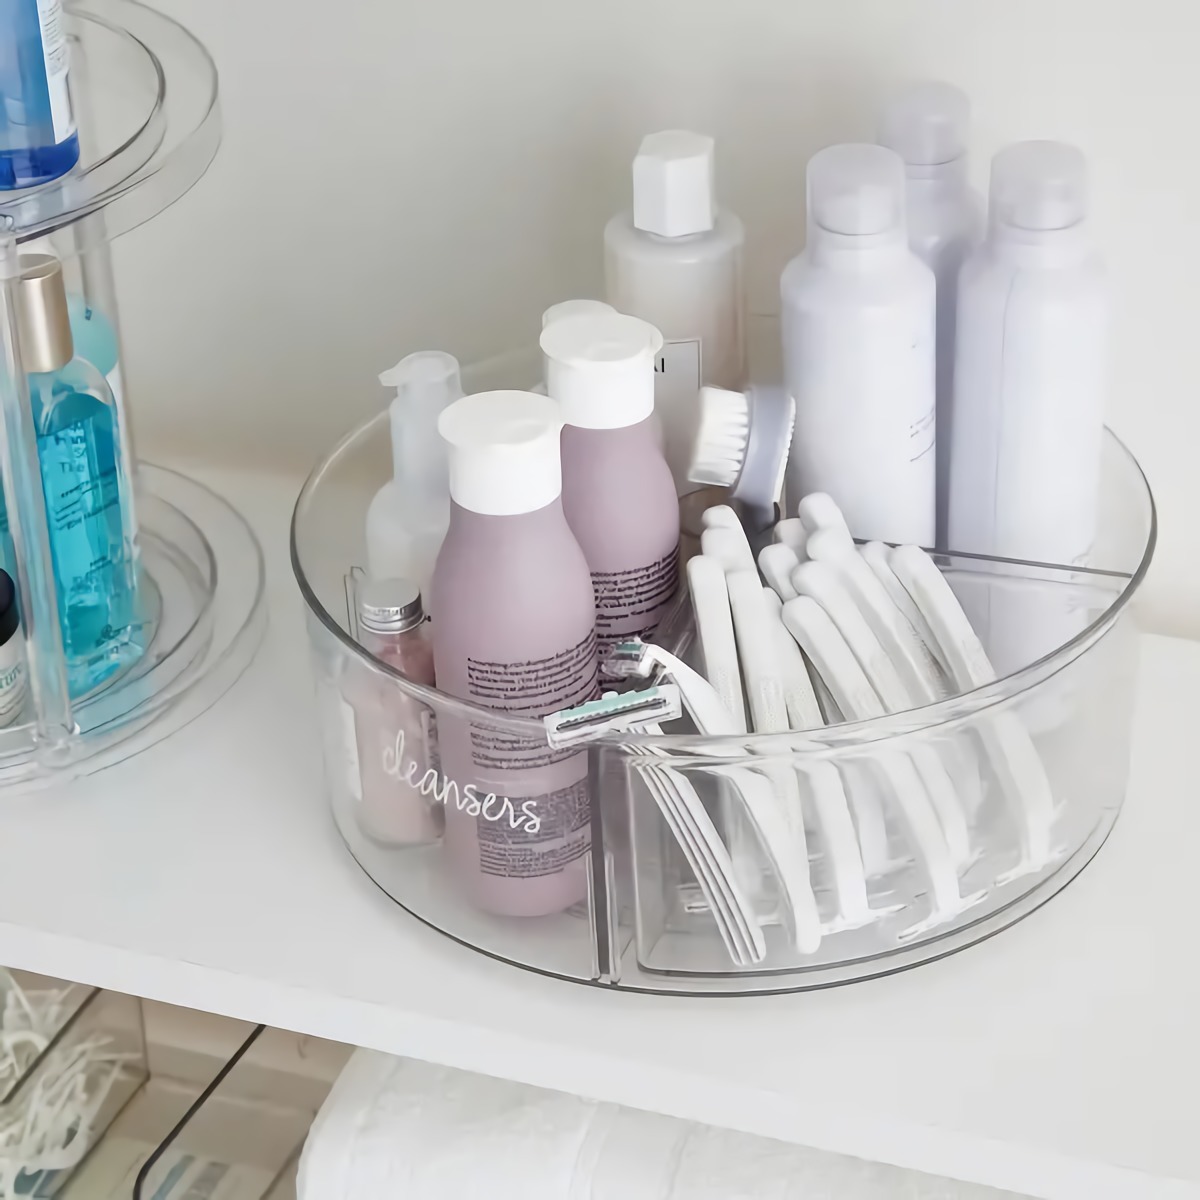 wie wirkt sich unordnung auf die psyche aus badezimmer aufraeumen runder container transparent mit lila flaschen